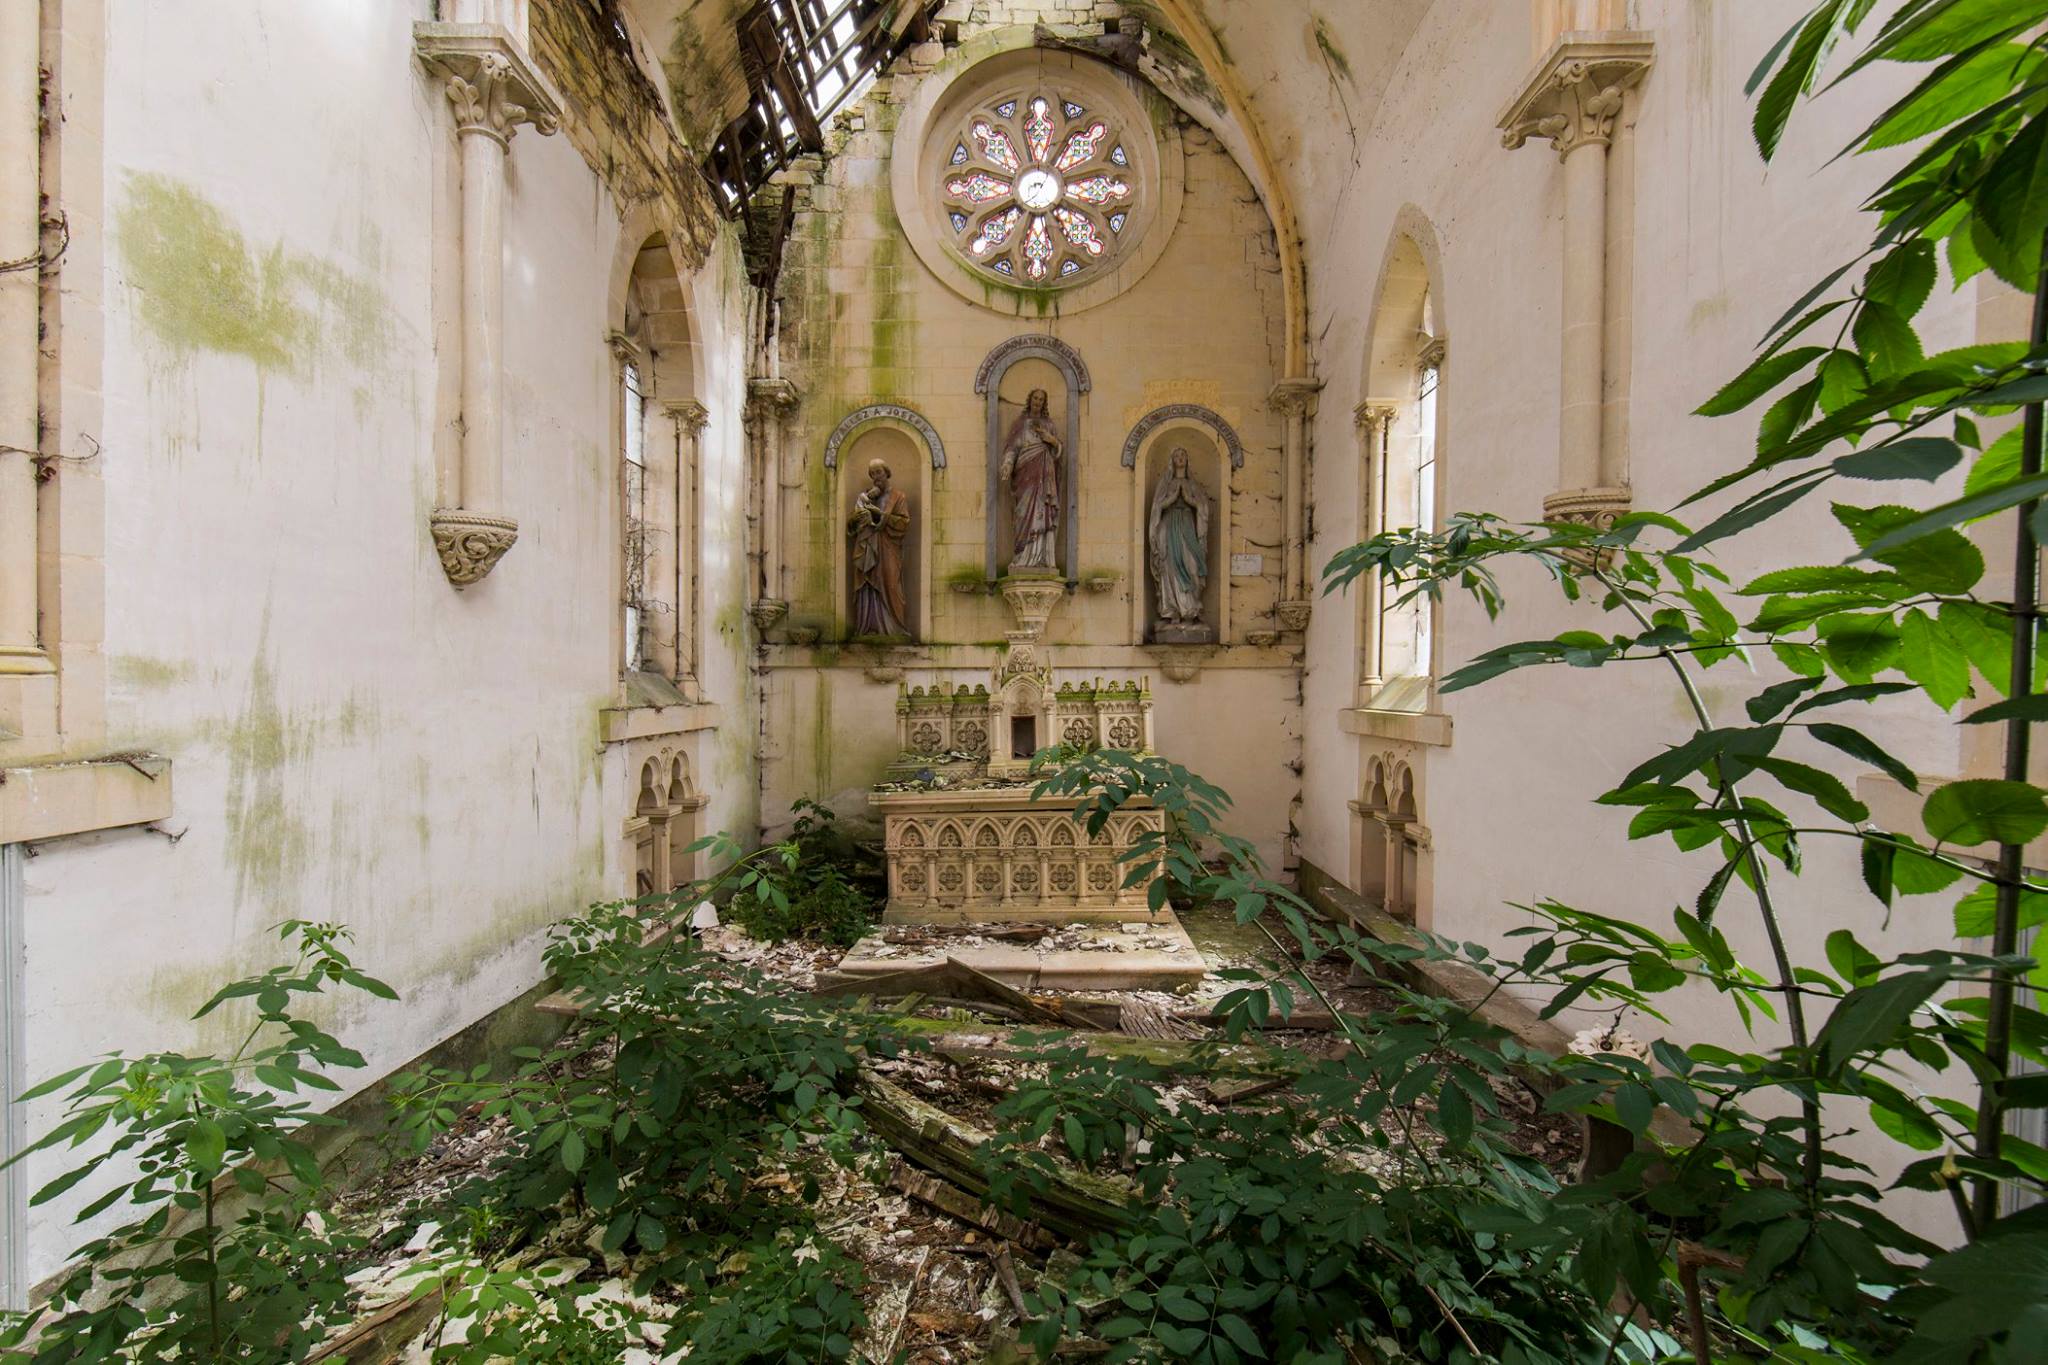 Intérieur d'une chapelle abandonnée dont le sol est recouvert de petits arbres et de plantes. Il y a de la mousse parsemée sur les murs